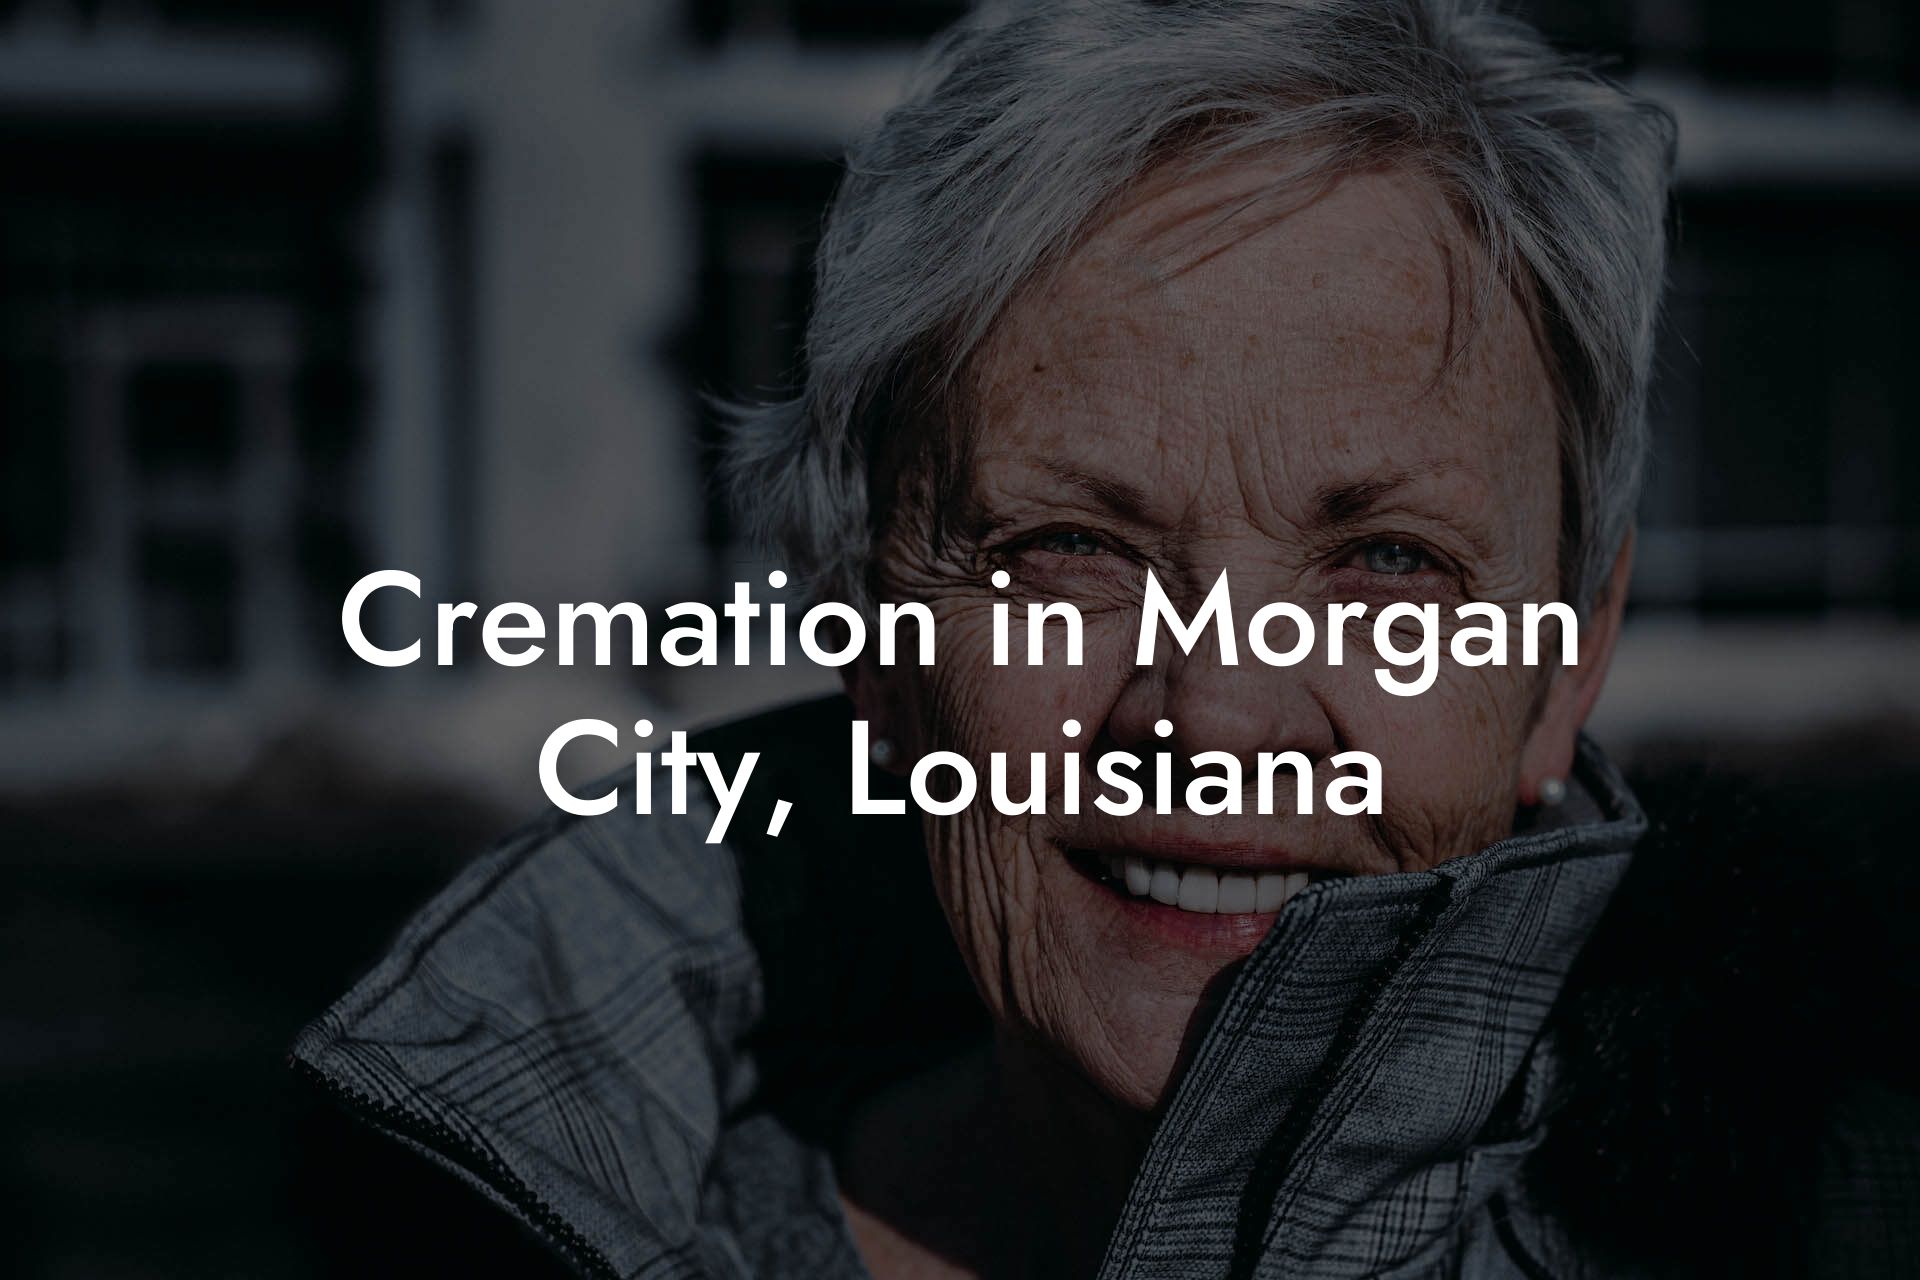 Cremation in Morgan City, Louisiana